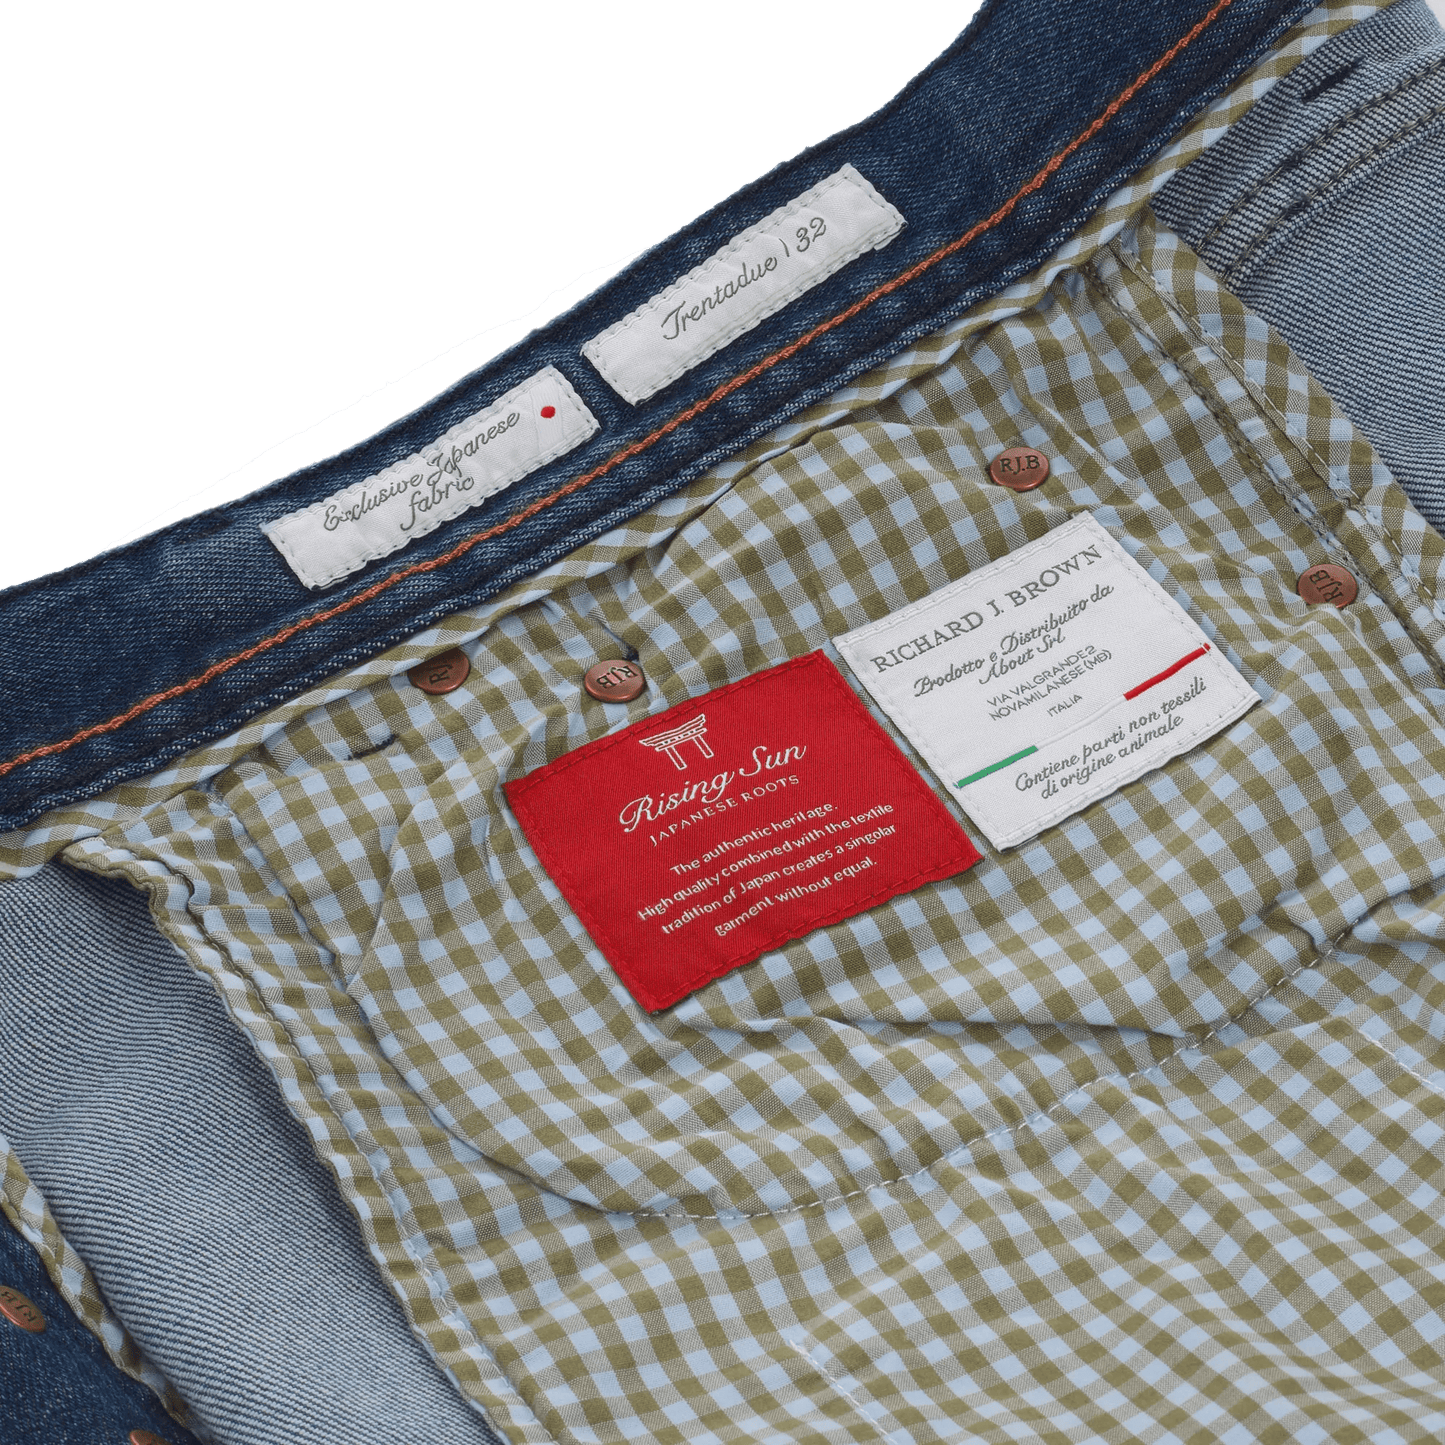 Richard J. Brown Slim - Fit Stretch - Cotton 5 Pocket Jeans in Denim Blue - SARTALE